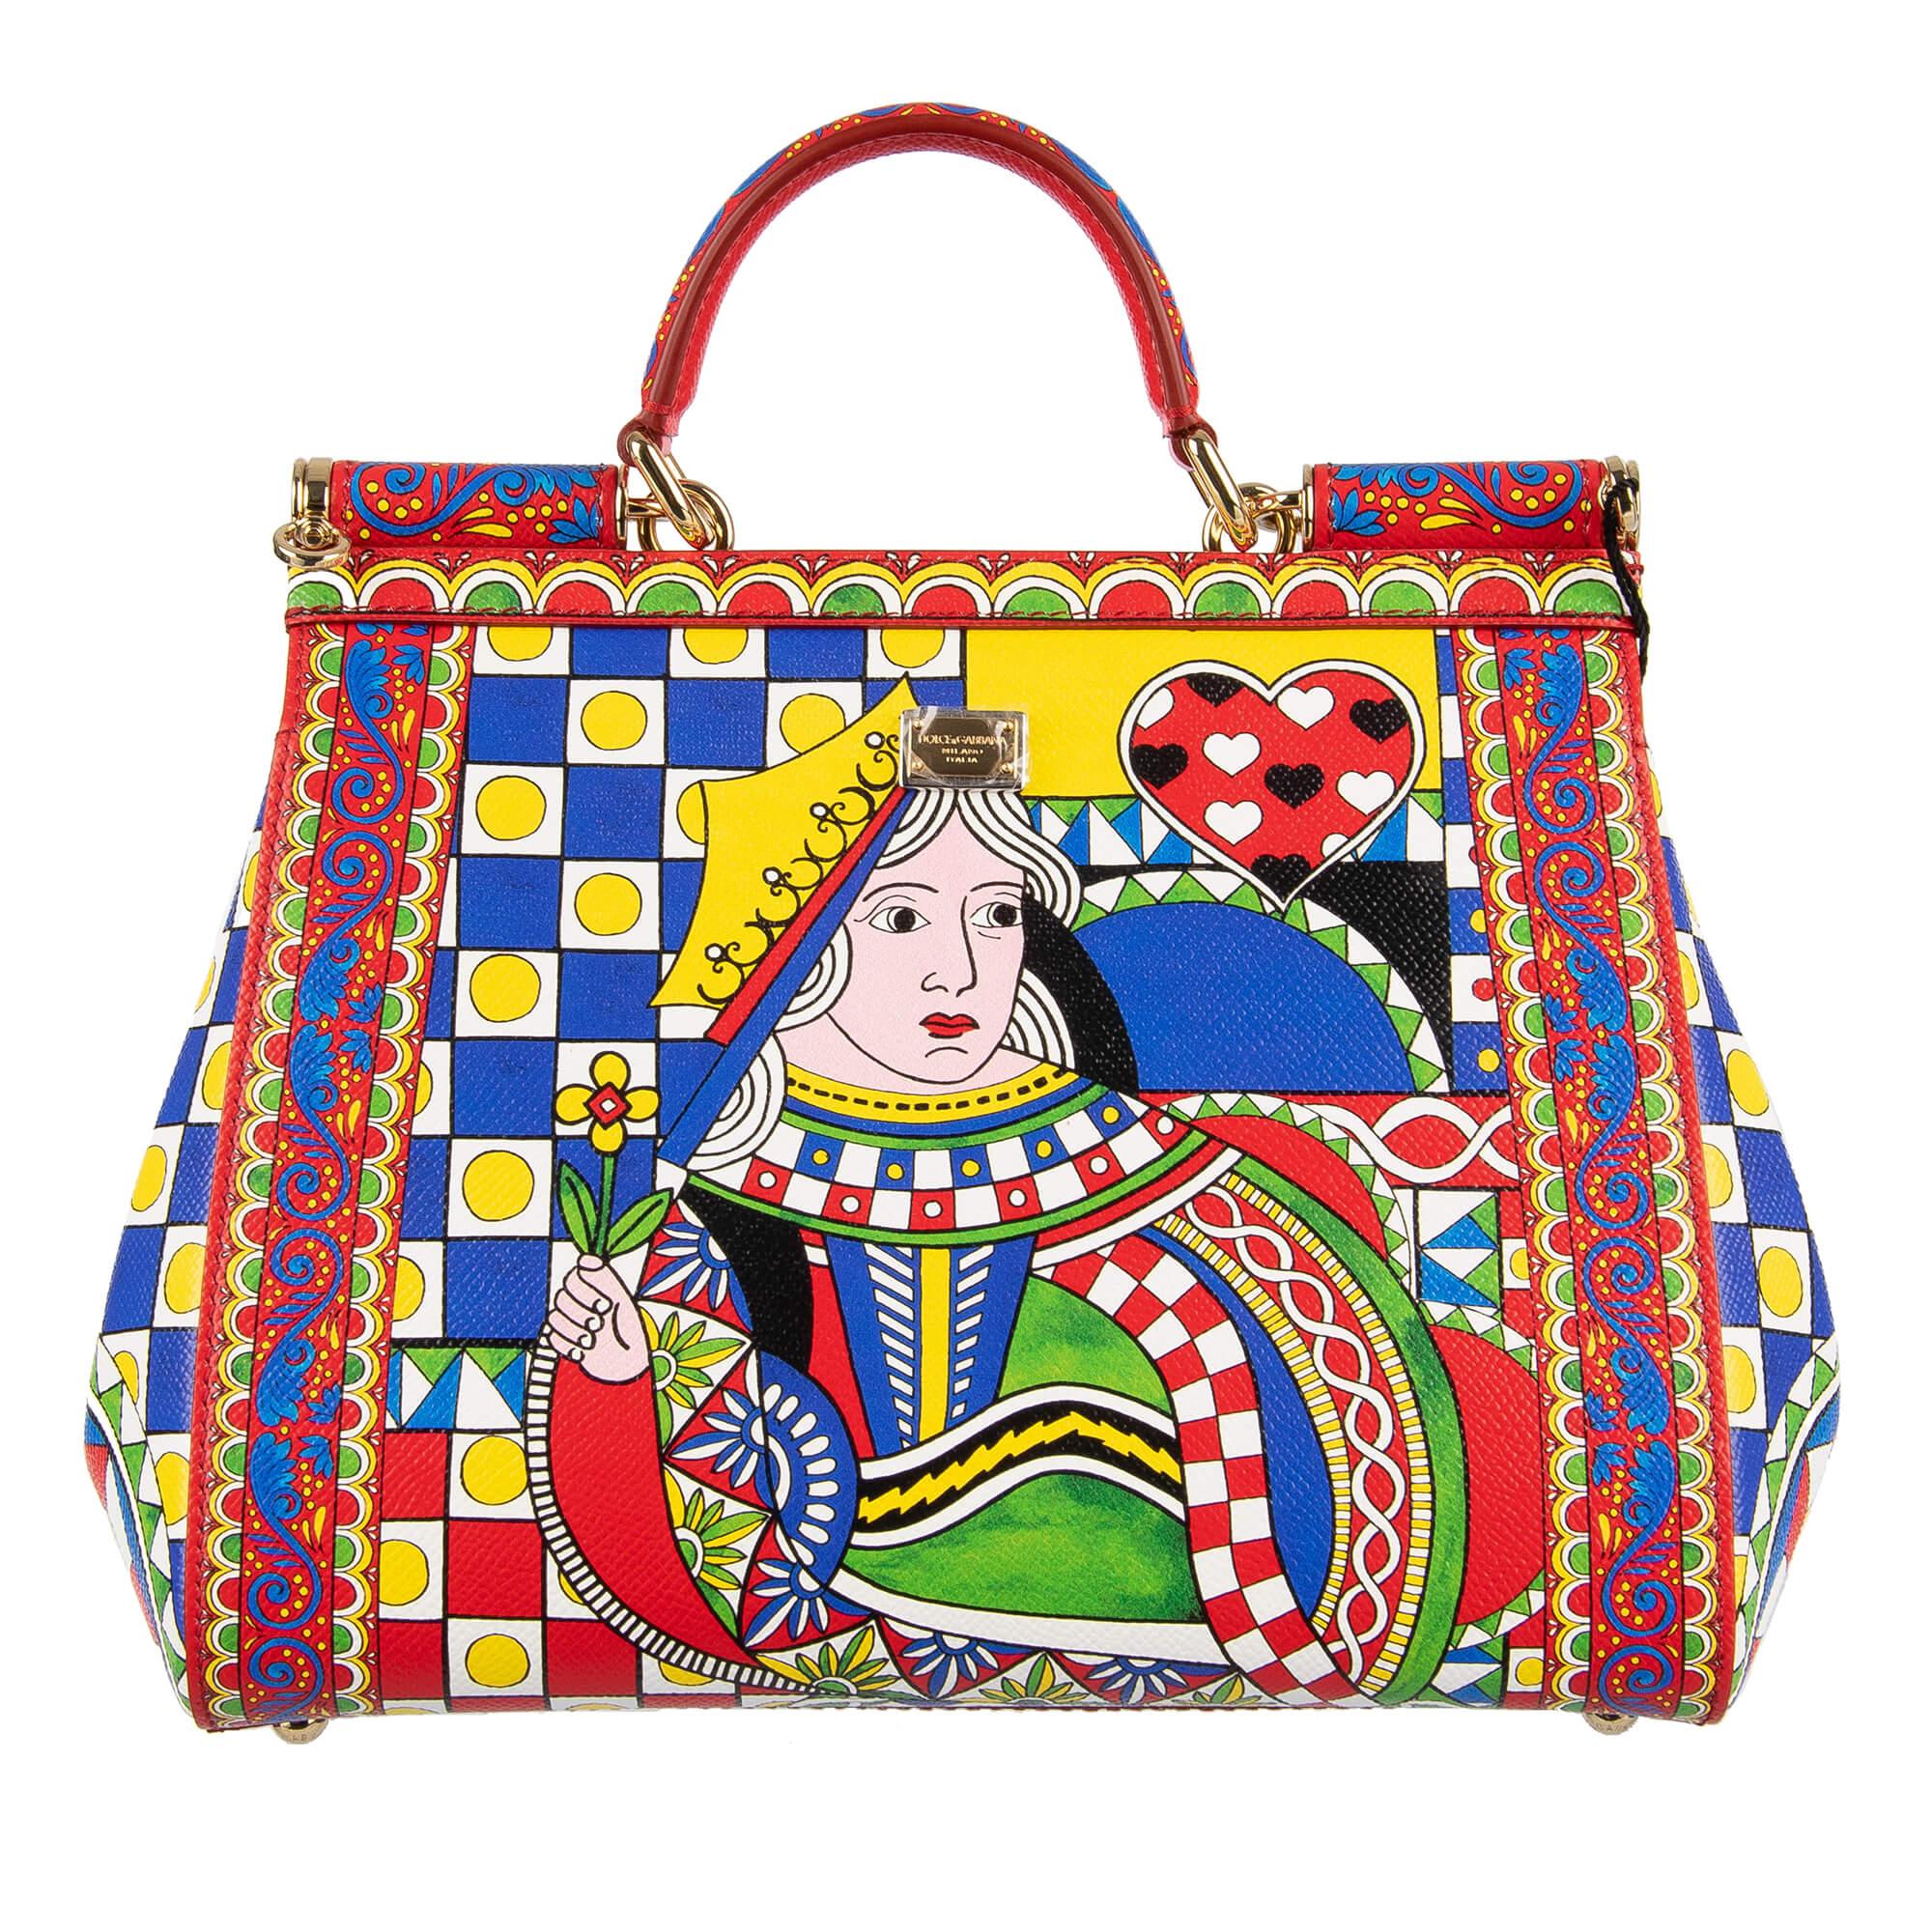 Dolce & Gabbana Tote Bag SICILY Medium with Carretto Siciliano Print ...